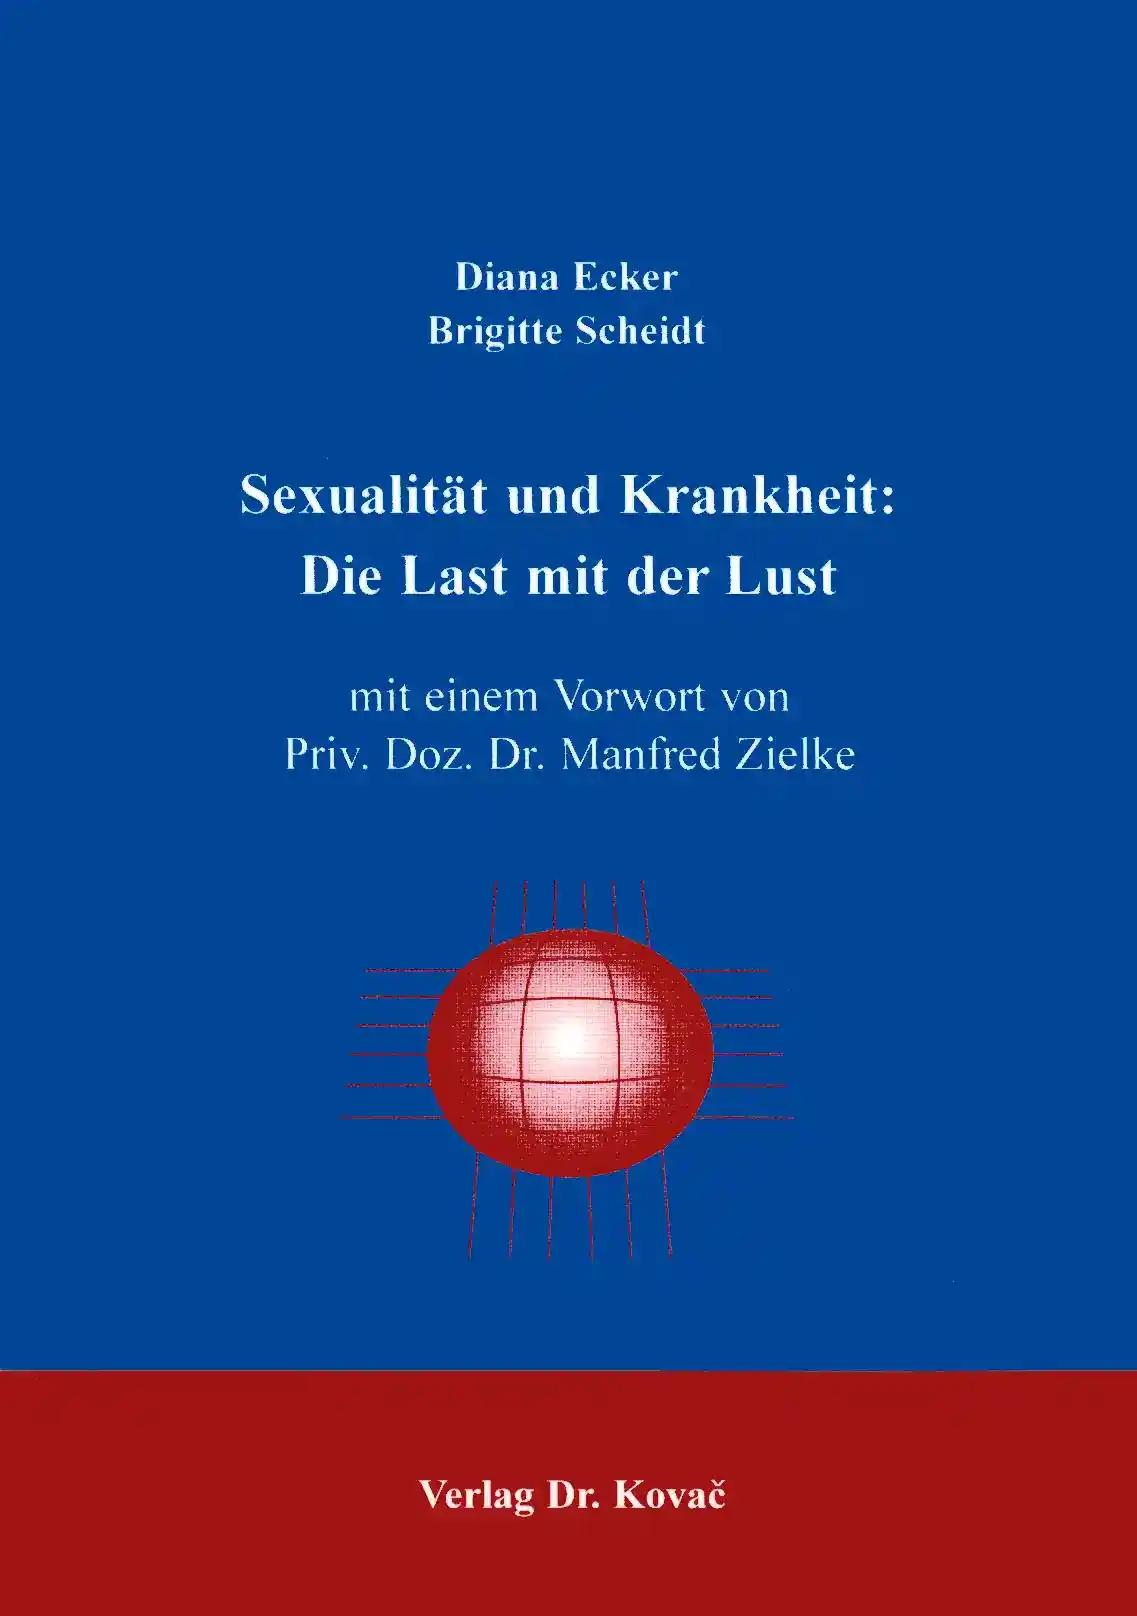 SexualitÃ¤t und Krankheit: Die Last mit der Lust, - Diana Ecker, Brigitte Scheidt